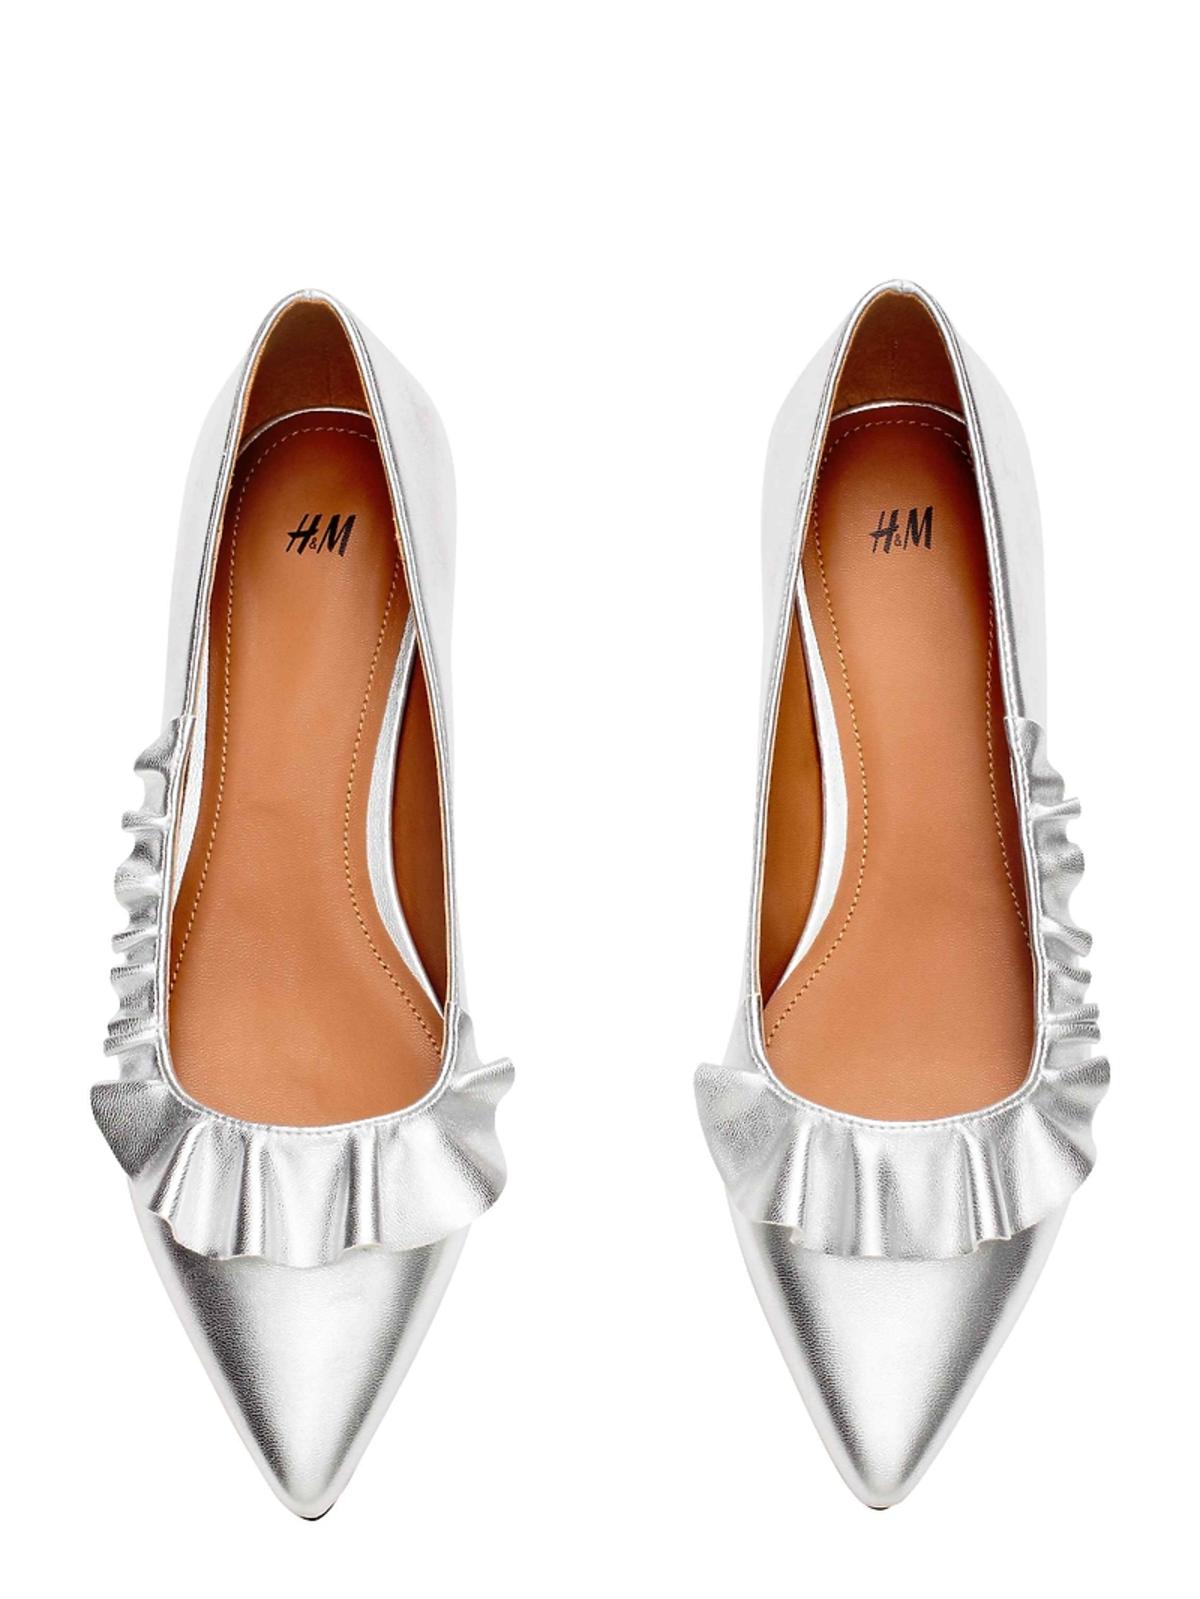 Buty na studniówkę 2017 Zara Reserved niski obcas - srebrne baleriny z falbanką H&M